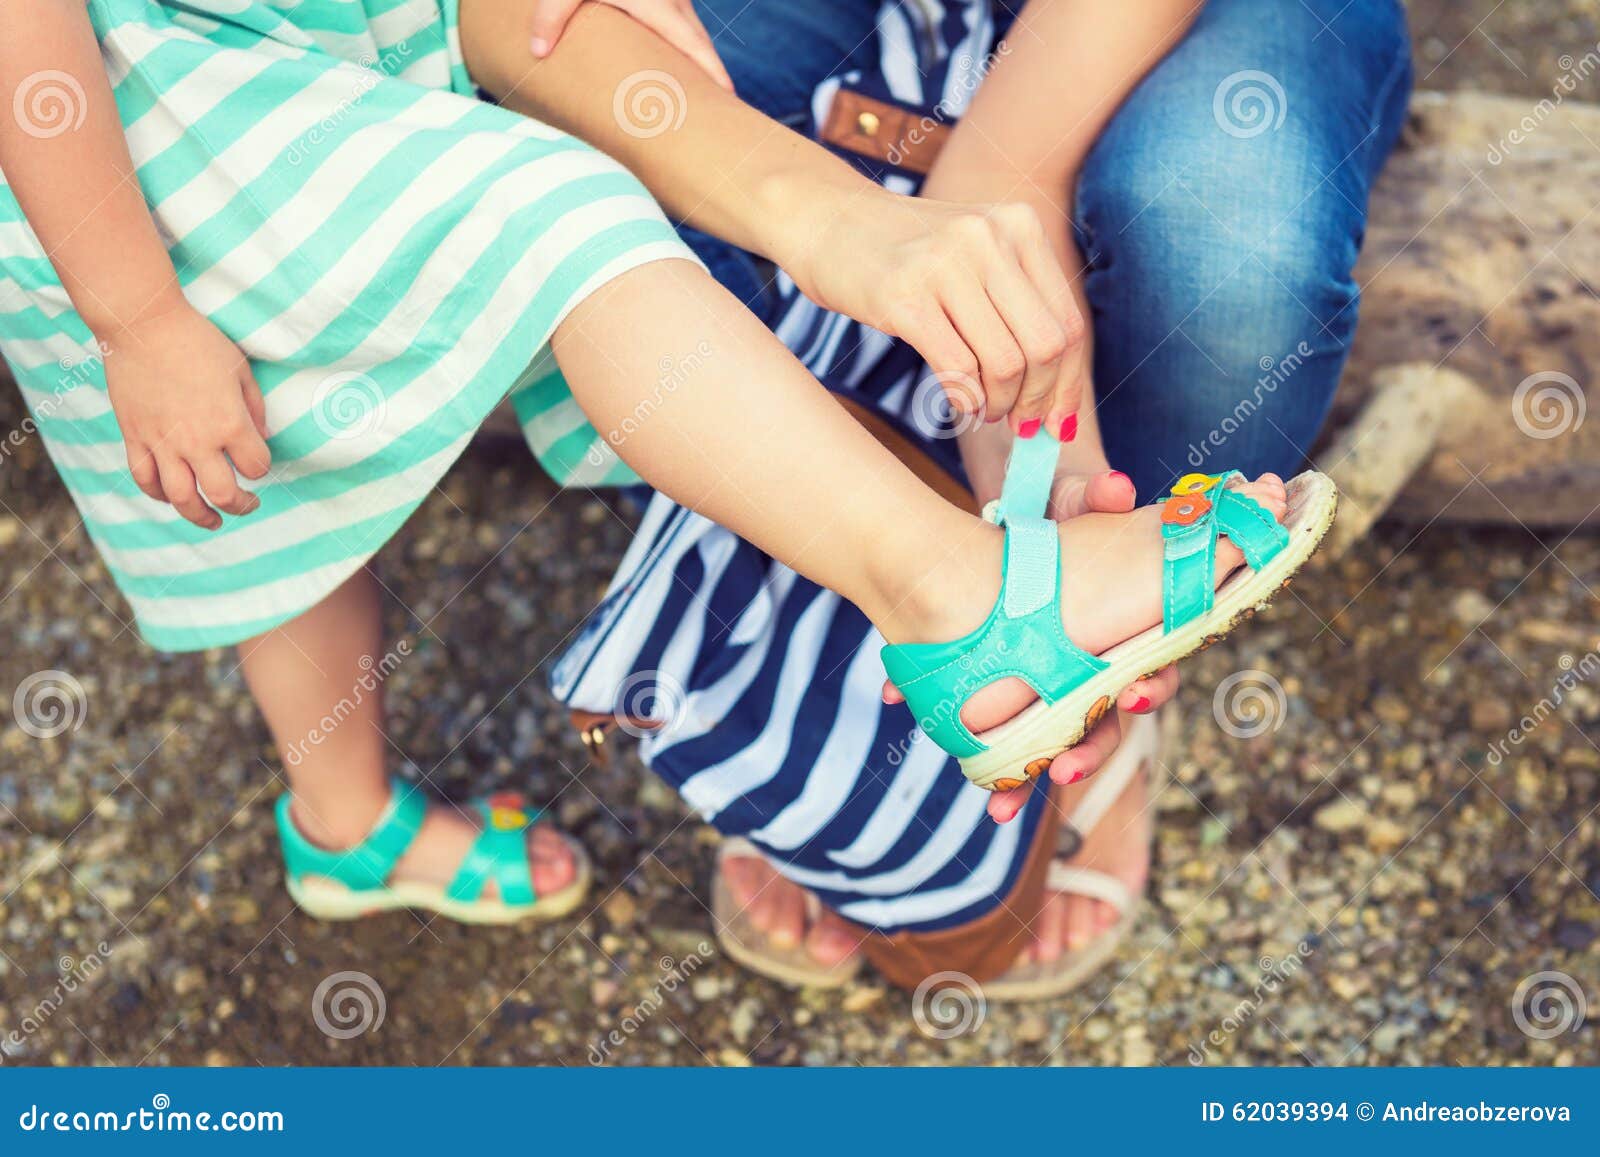 Дети в сандалях. Девочка в сандалях. Детские ноги в сандалях. Дети в босоножках. Детские ножки в сандаликах.